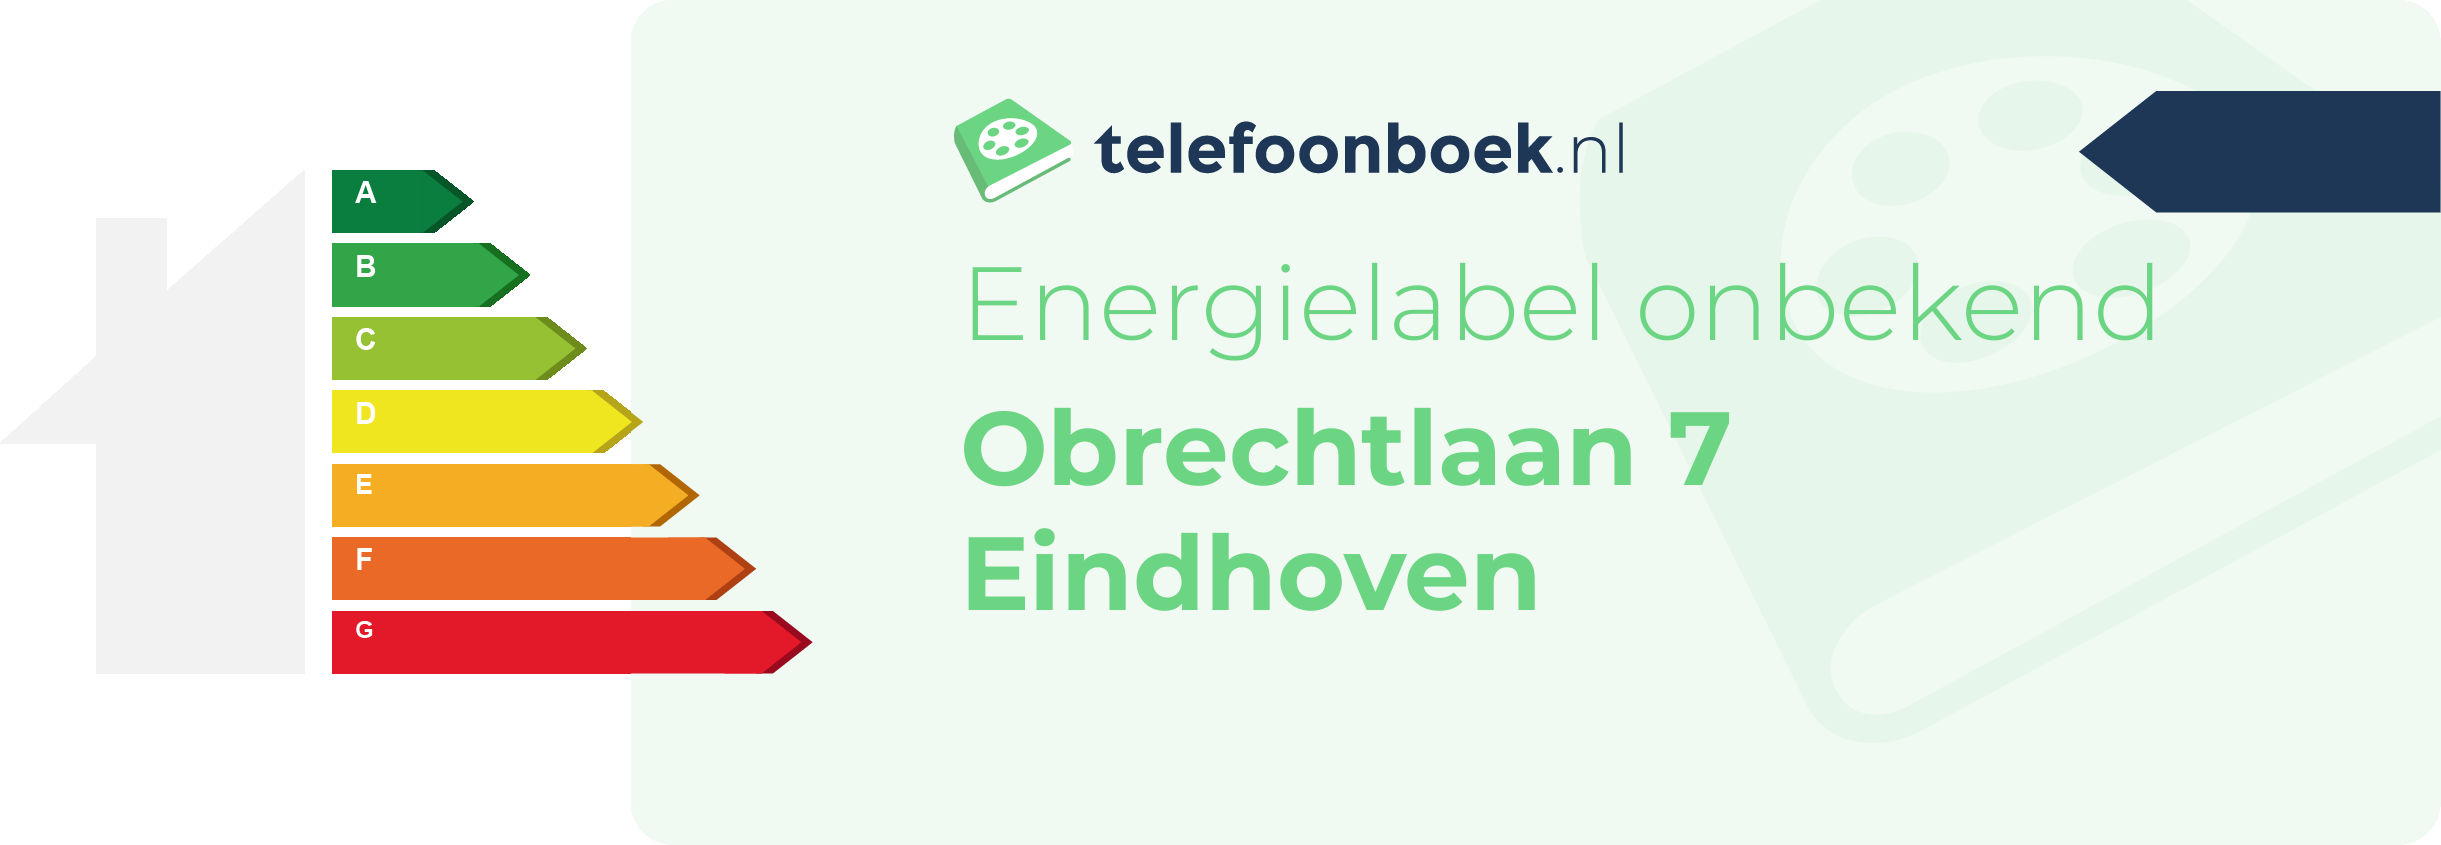 Energielabel Obrechtlaan 7 Eindhoven